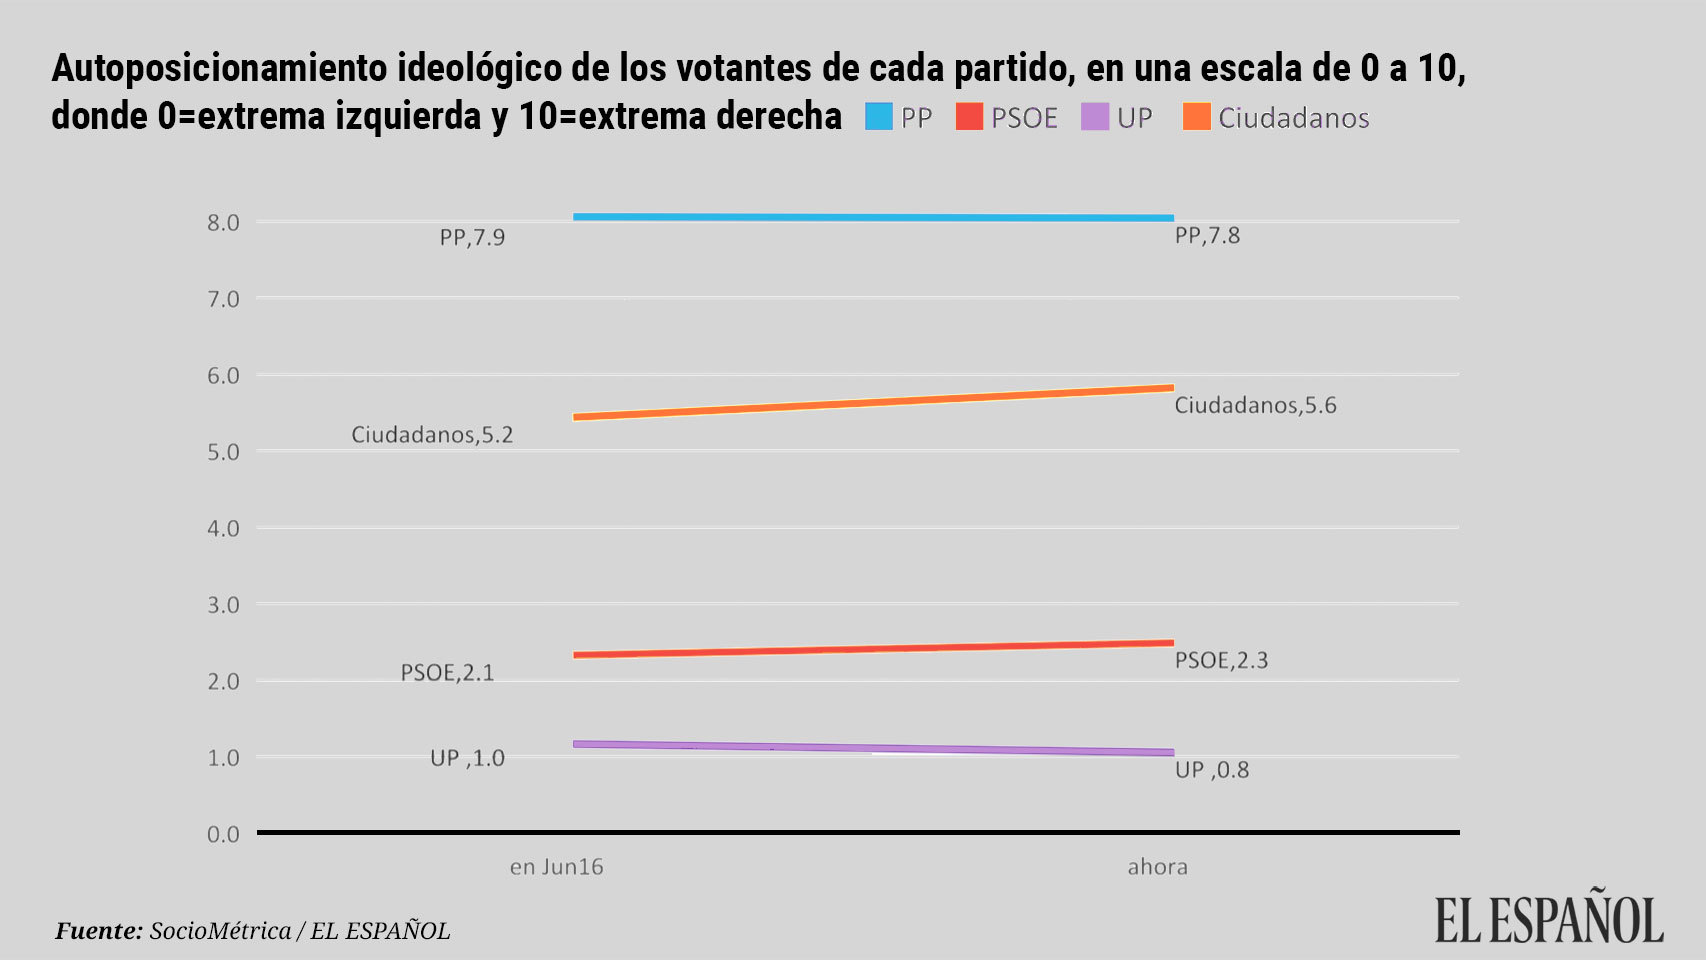 El avance de Cs hacia la derecha y del PSOE al centro cambian el mapa político